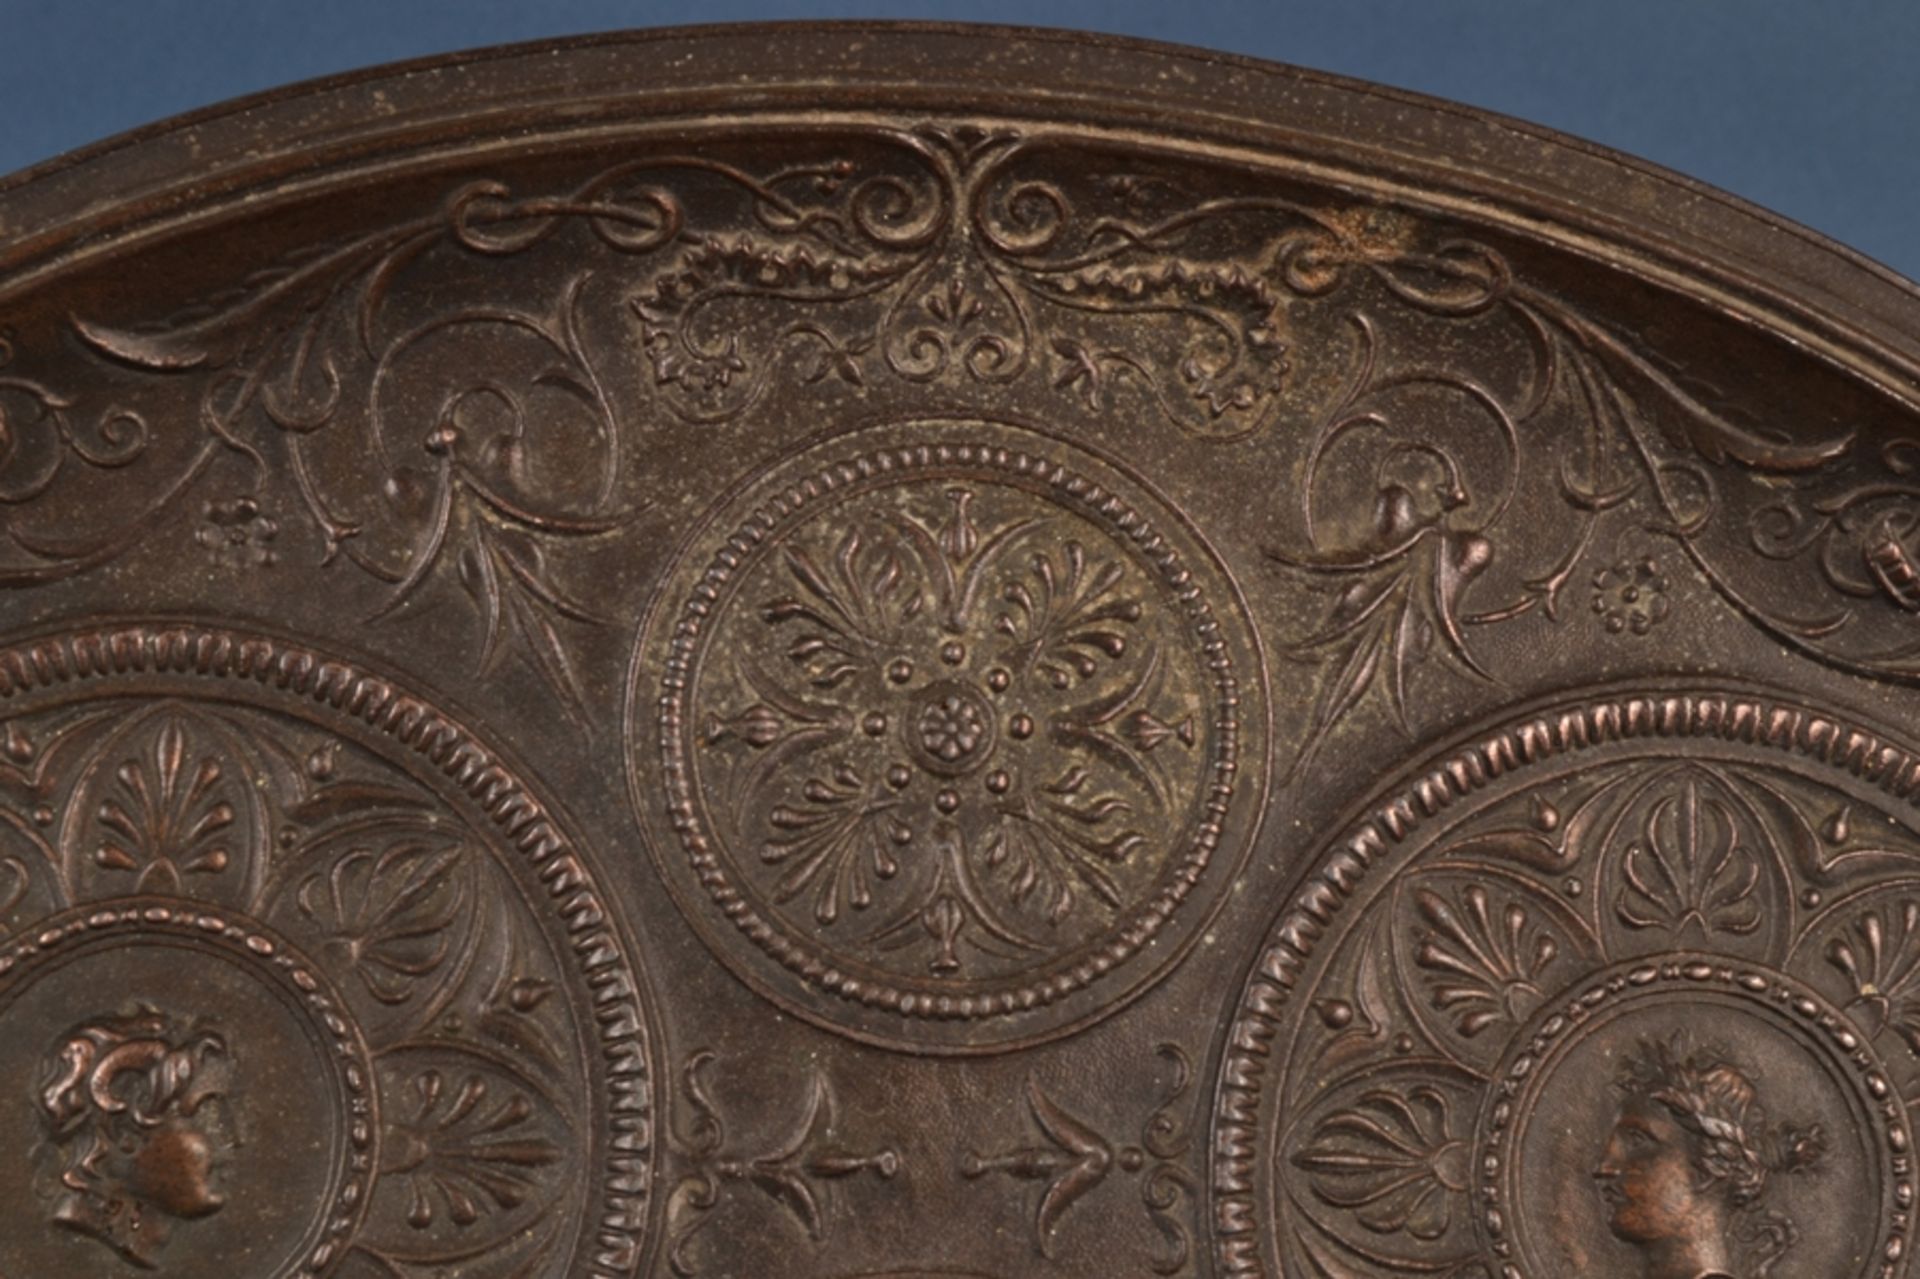 Tafelaufsatz, Metallguss, Historismus/Neo-Empire, Ende 19. Jhd., ovale Ablage von sitzender Sphinx - Bild 8 aus 17